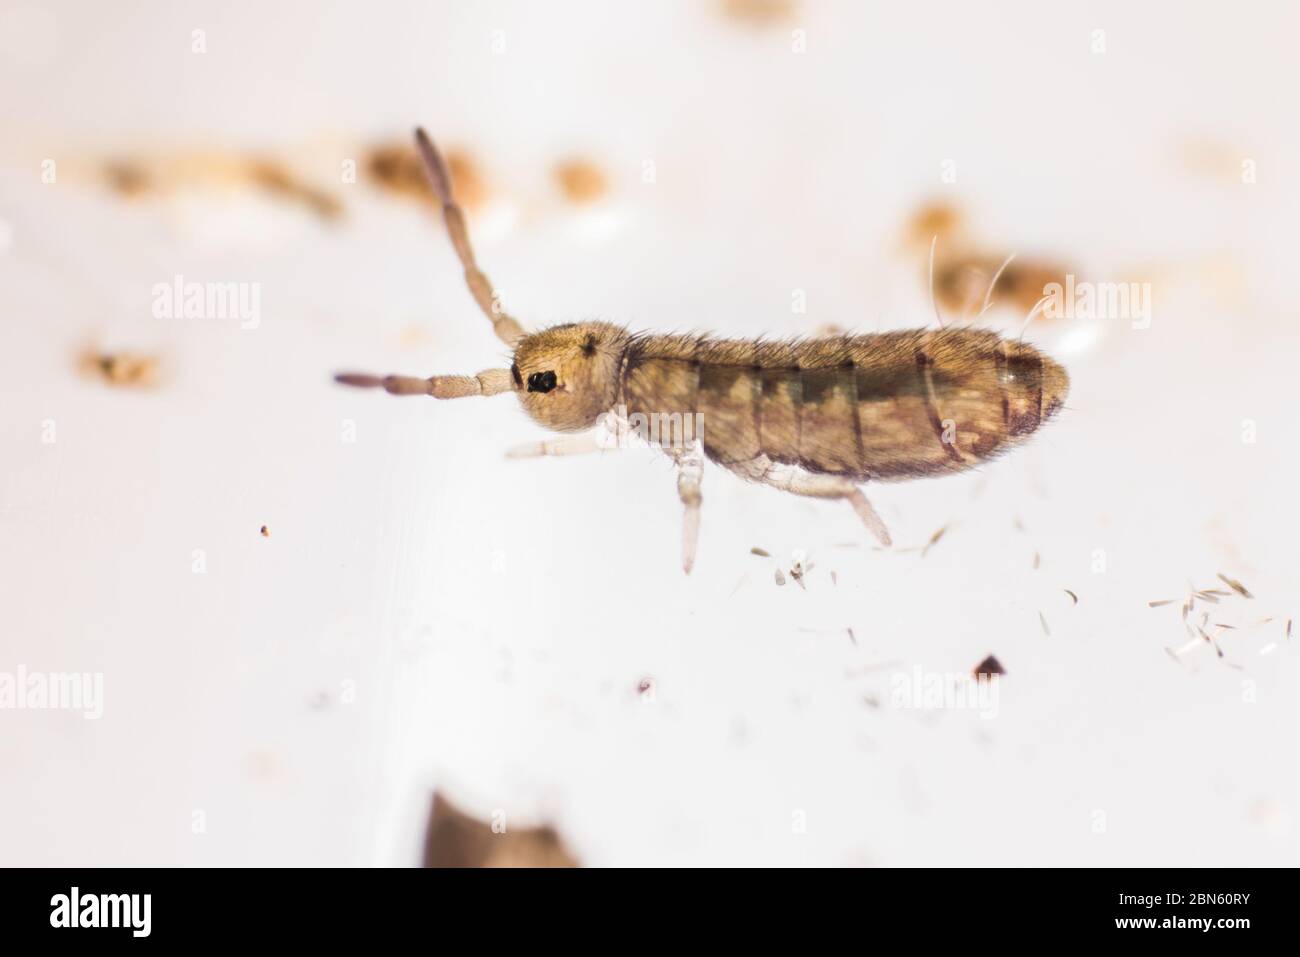 Un petit ressort allongé d'un jardin de Berkeley, Californie. Ces petits insectes sont omniprésents mais souvent négligés. Banque D'Images